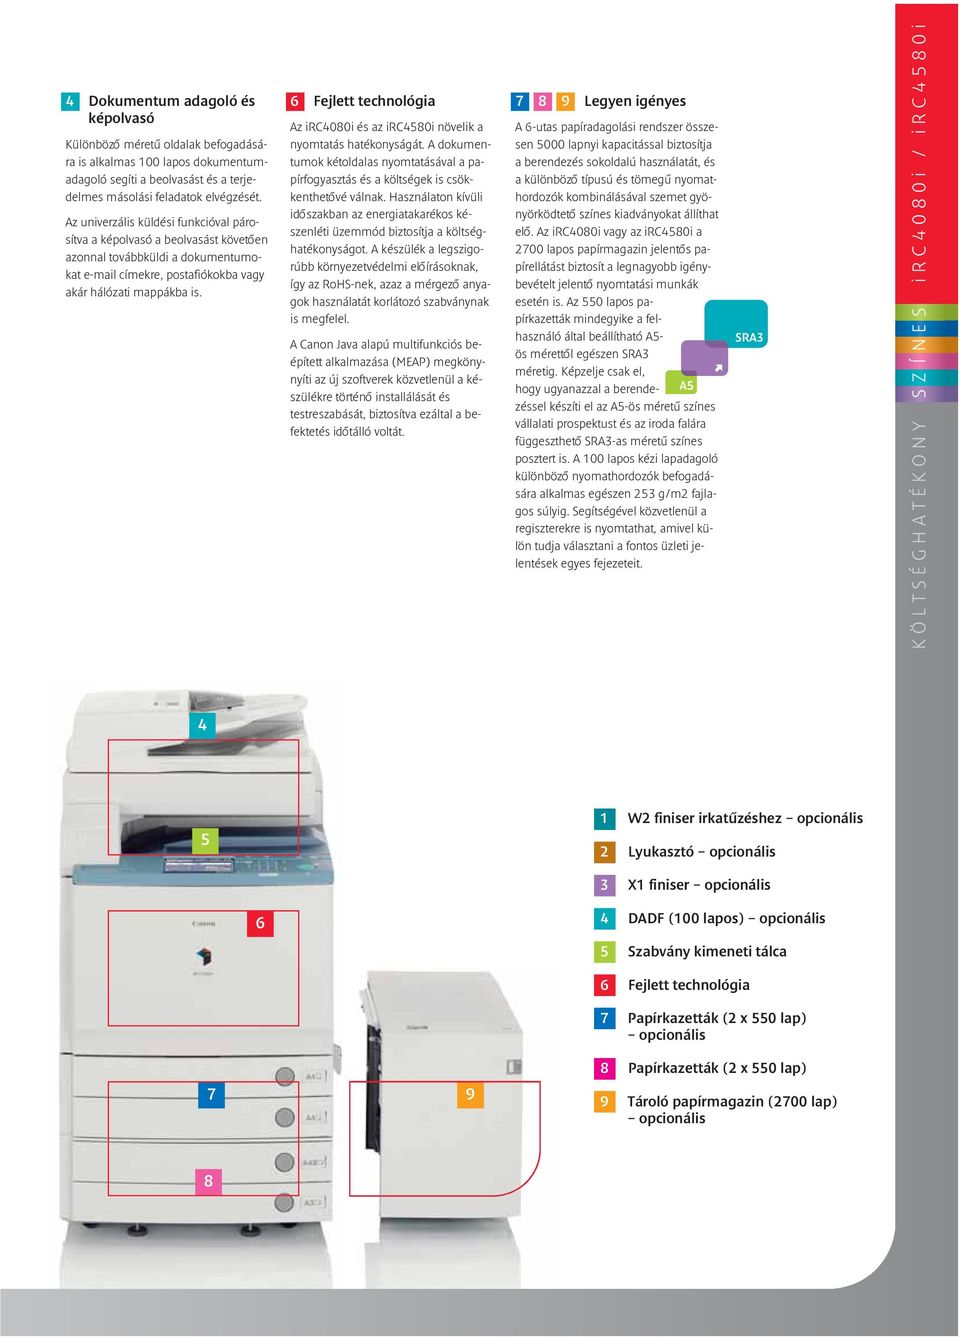 6 Fejlett technológia Az irc4080i és az irc4580i növelik a nyomtatás hatékonyságát. A dokumentumok kétoldalas nyomtatásával a papírfogyasztás és a költségek is csökkenthetôvé válnak.